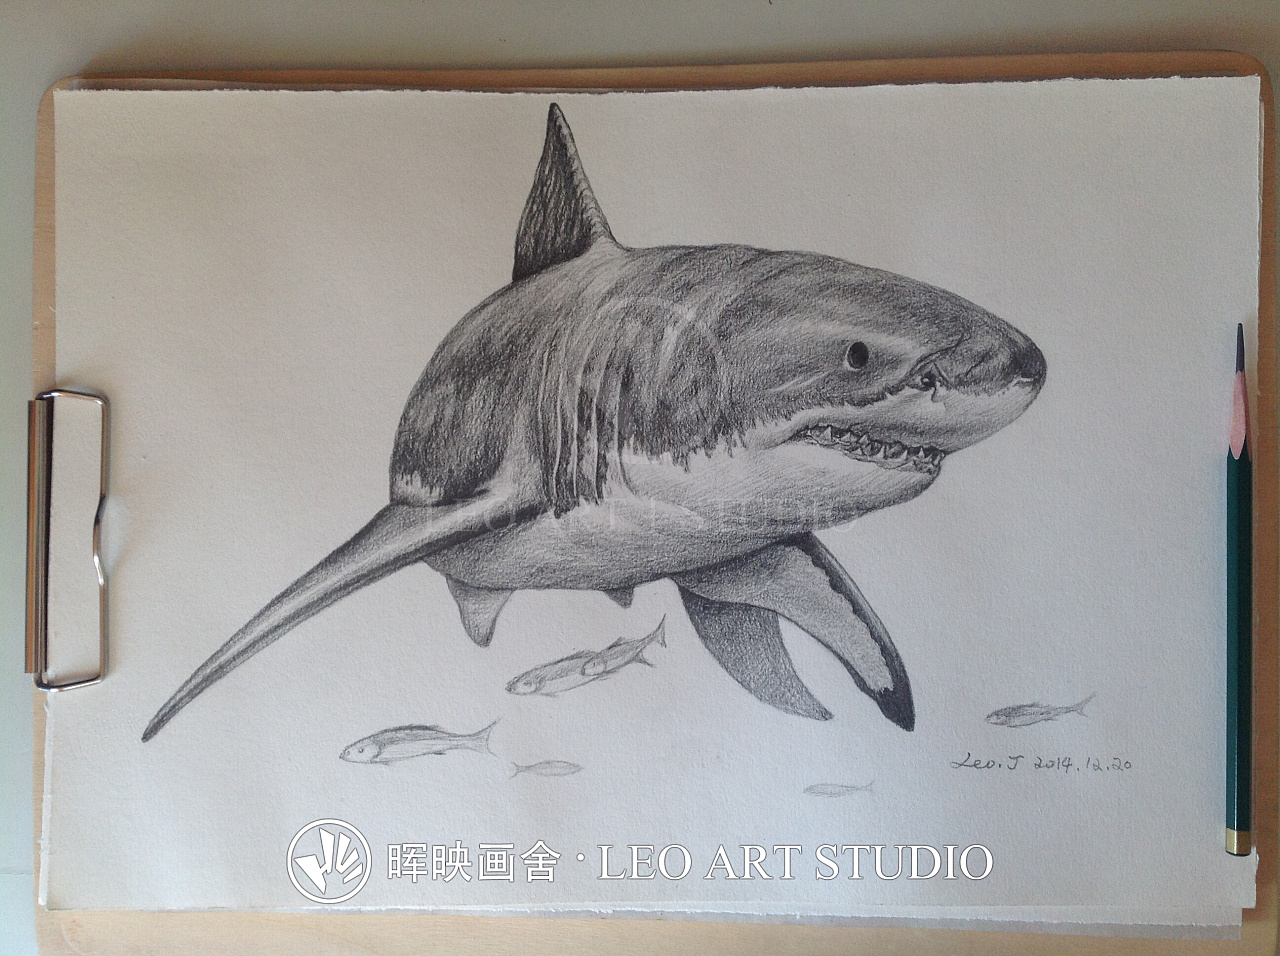 分享一幅素描插画——《大白鲨》的绘制过程